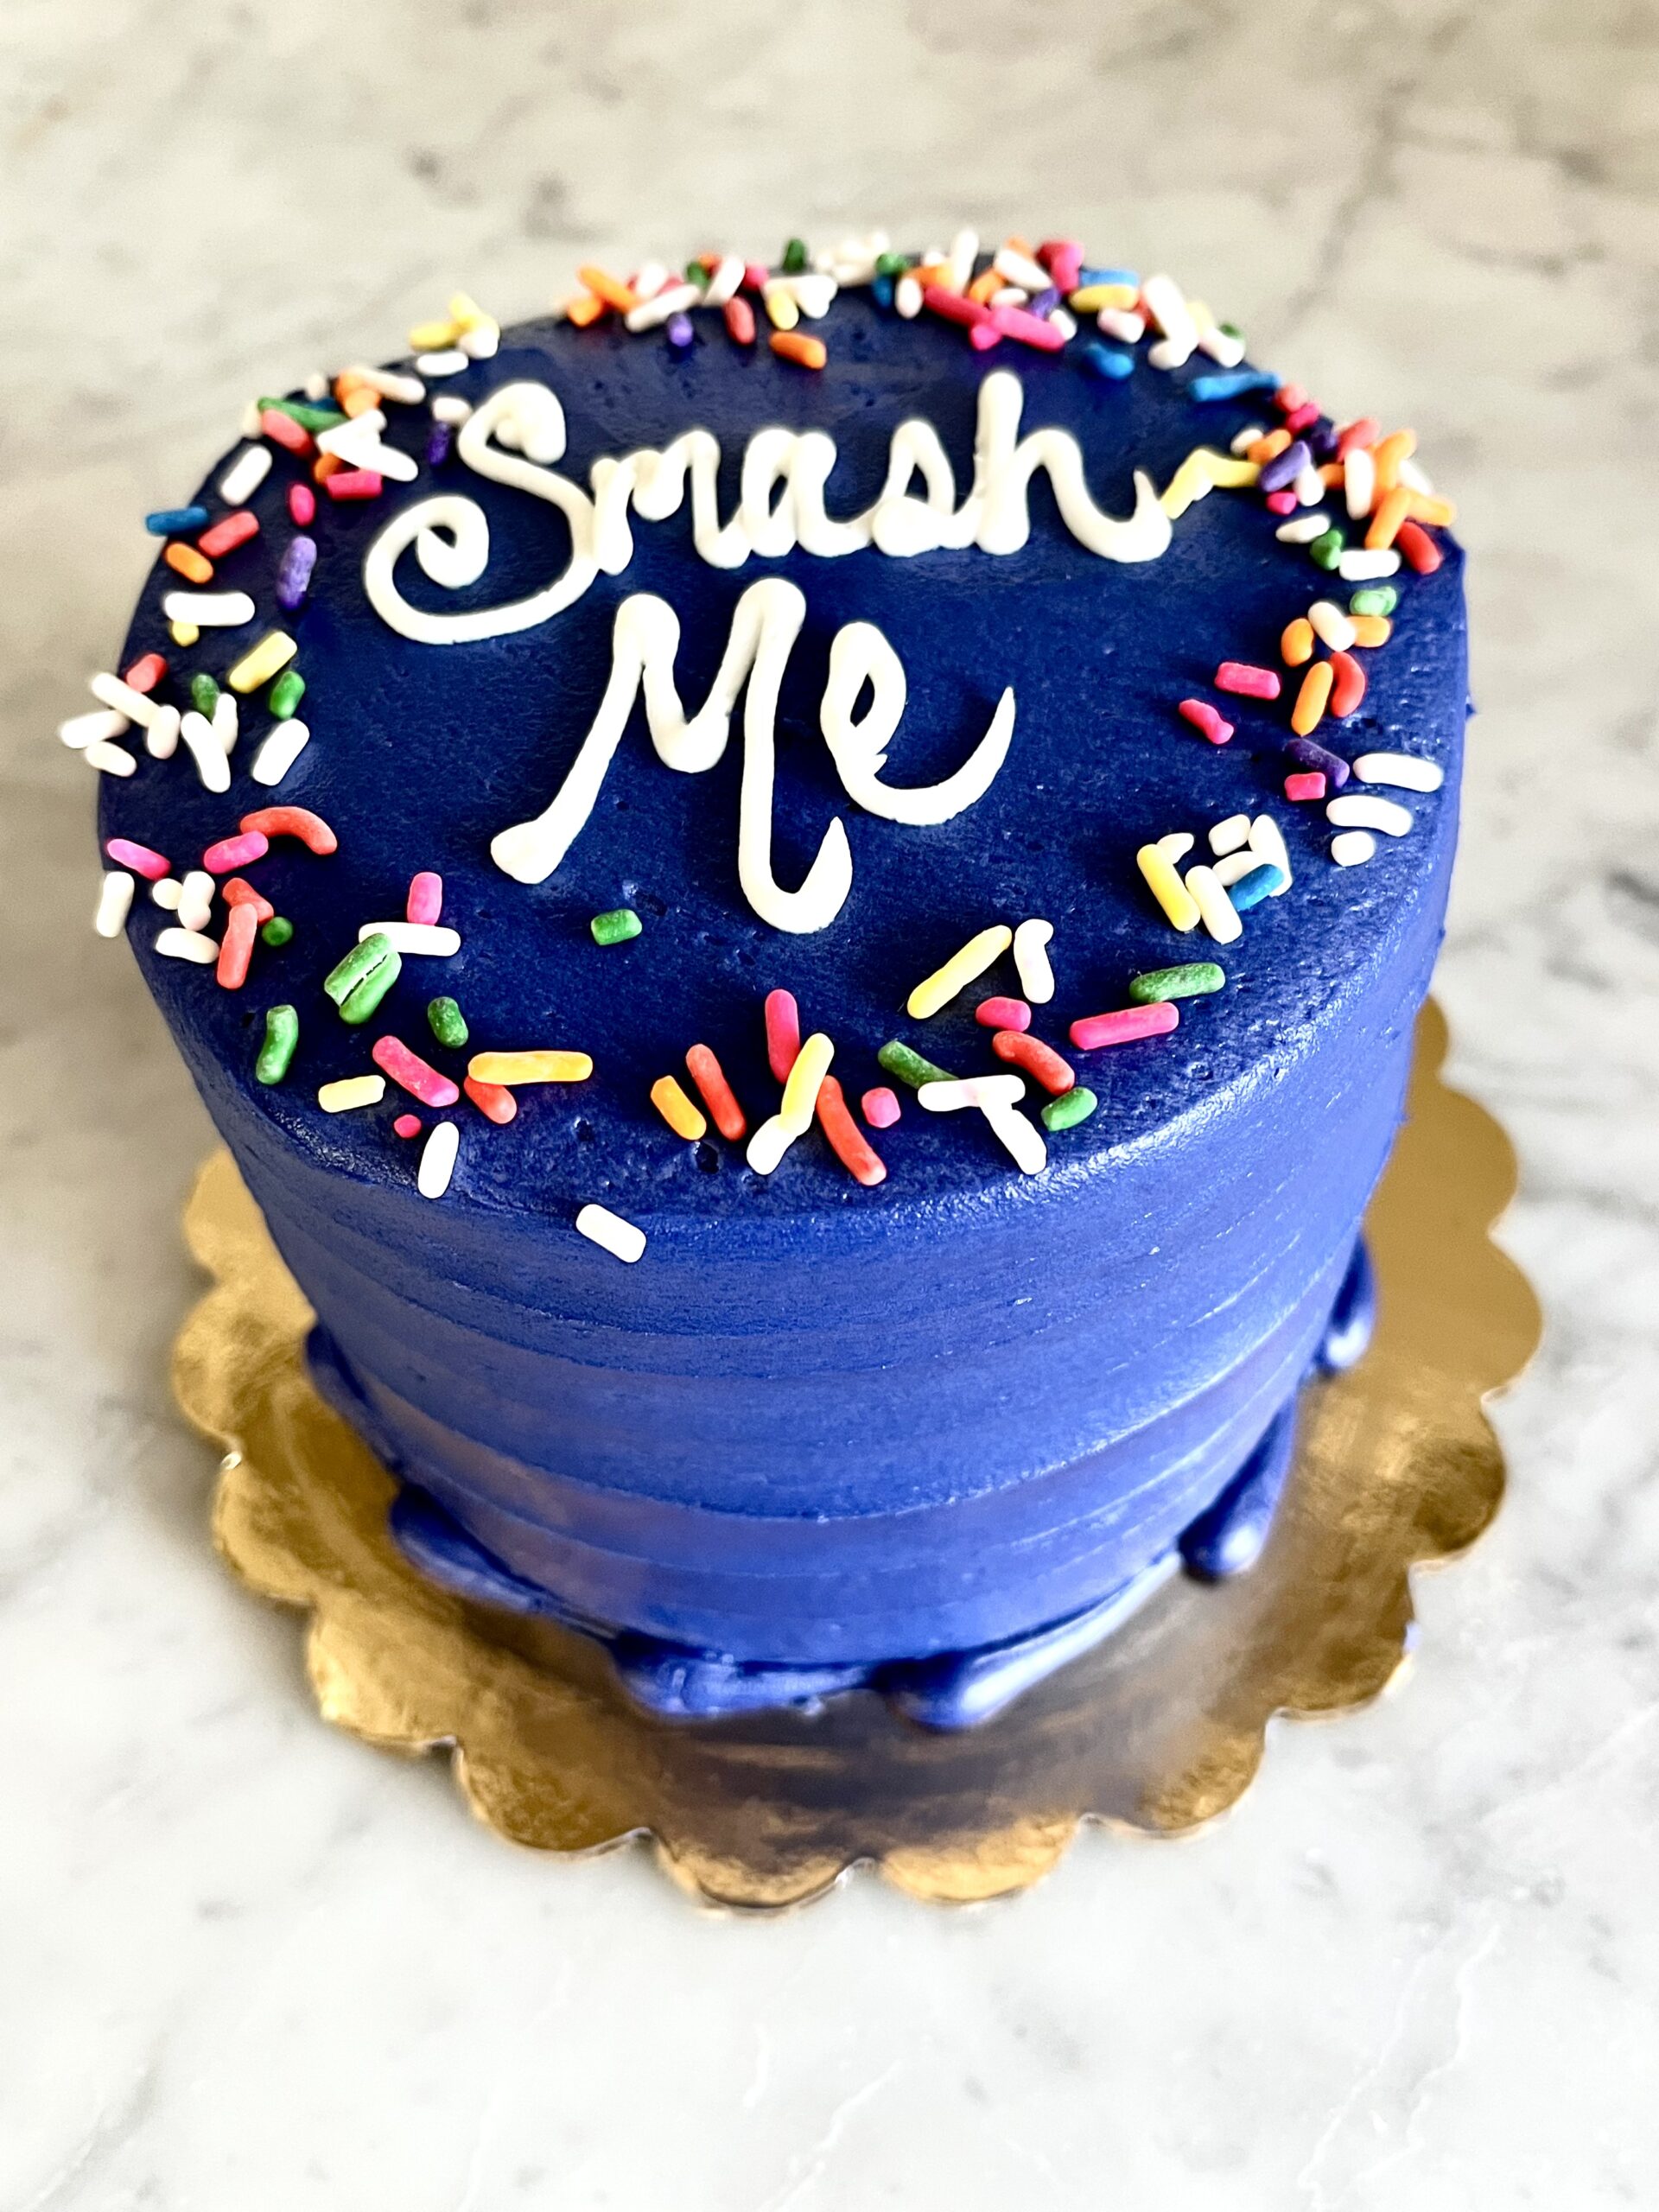 Smash Cake - The Cakeroom Bakery Shop